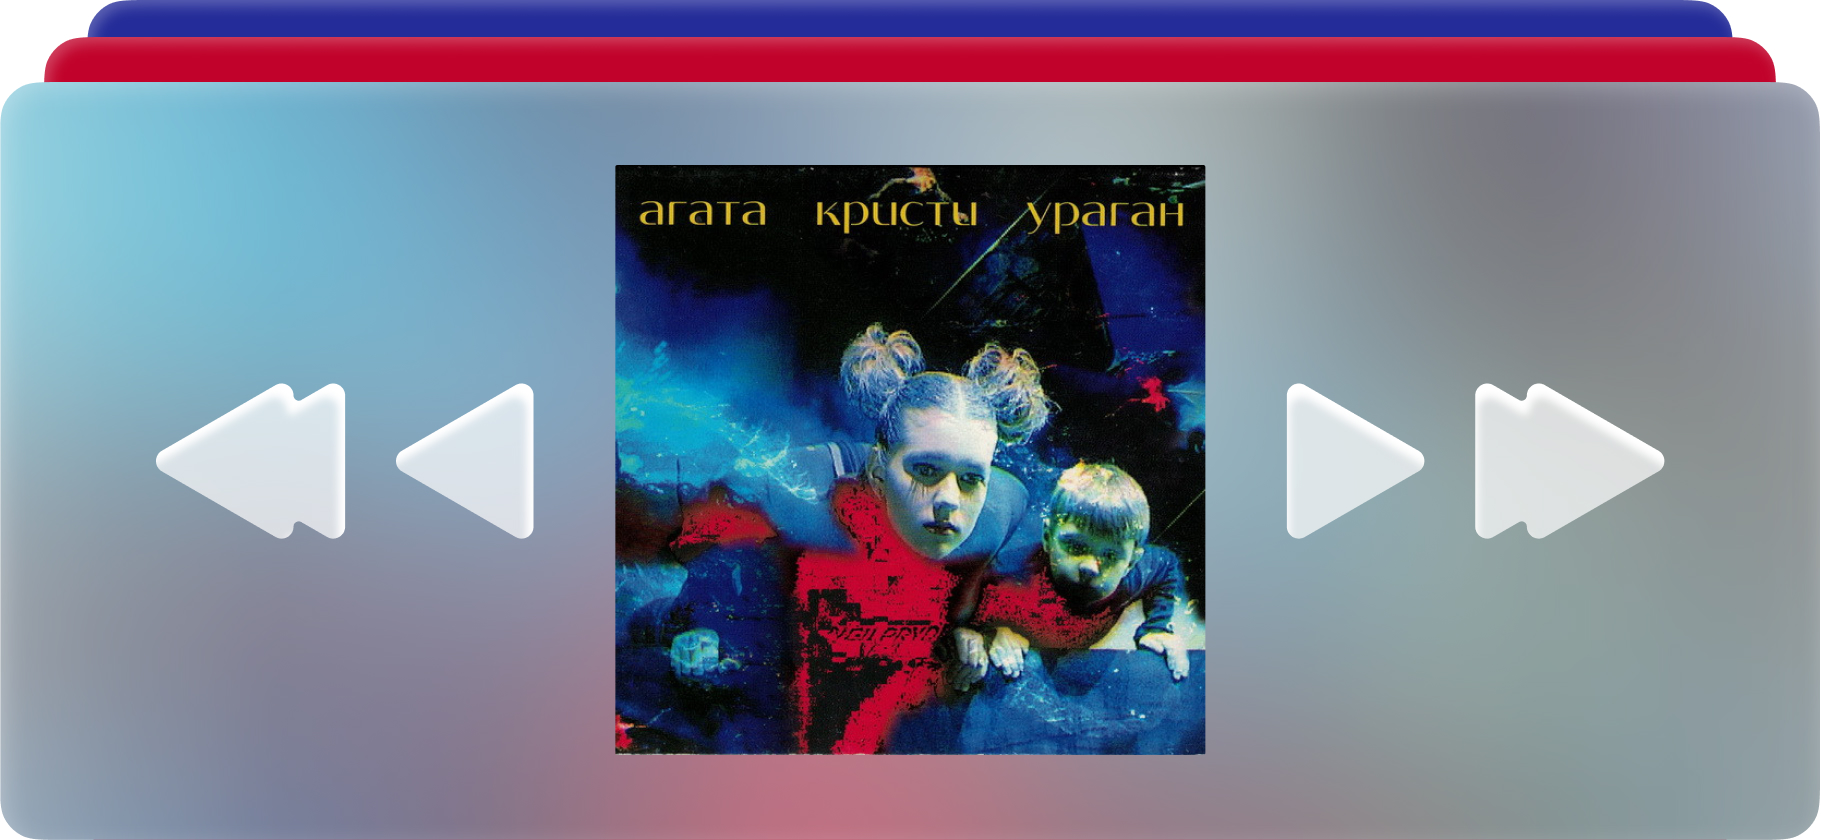 Почему стоит послу­шать альбом «Ура­ган» группы «Агата Кристи»